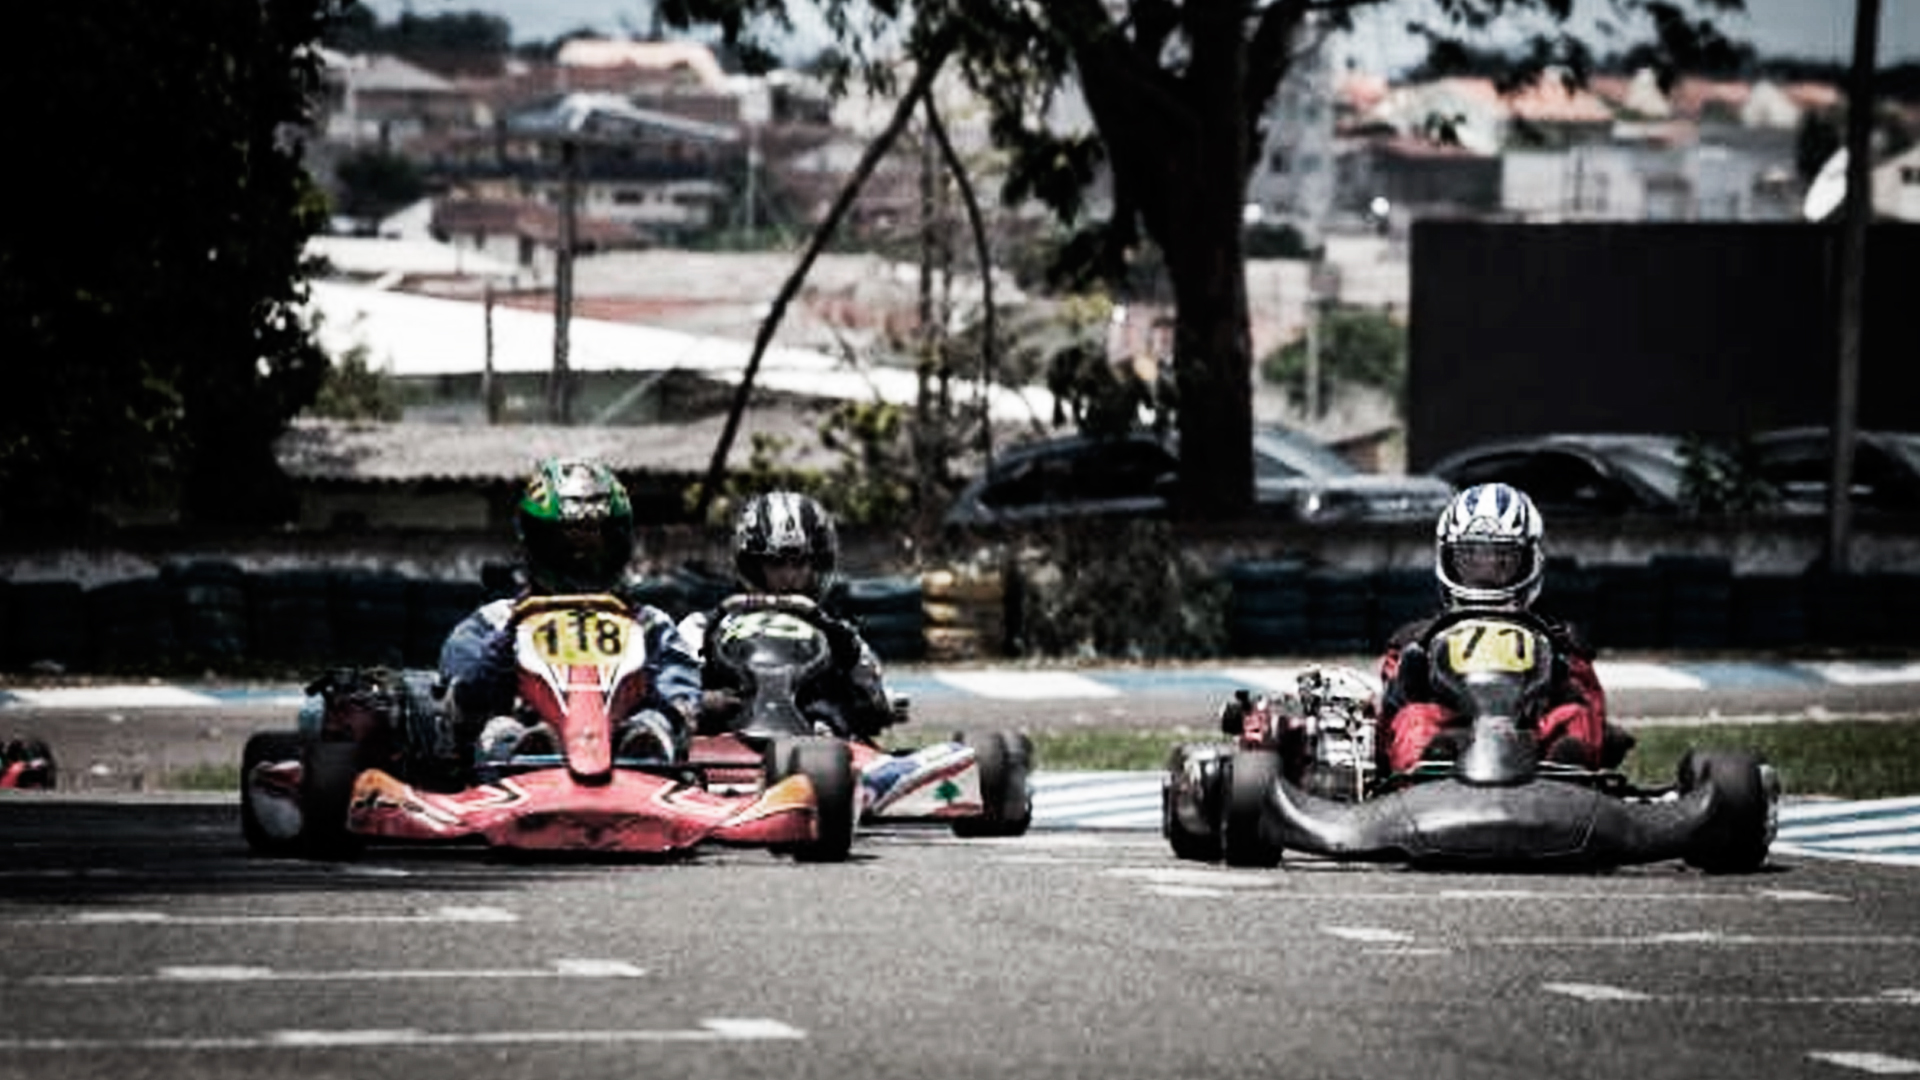 Três pilotos correndo em no kartódromo outdoor da empresa Kartódromo São José dos Pinhais